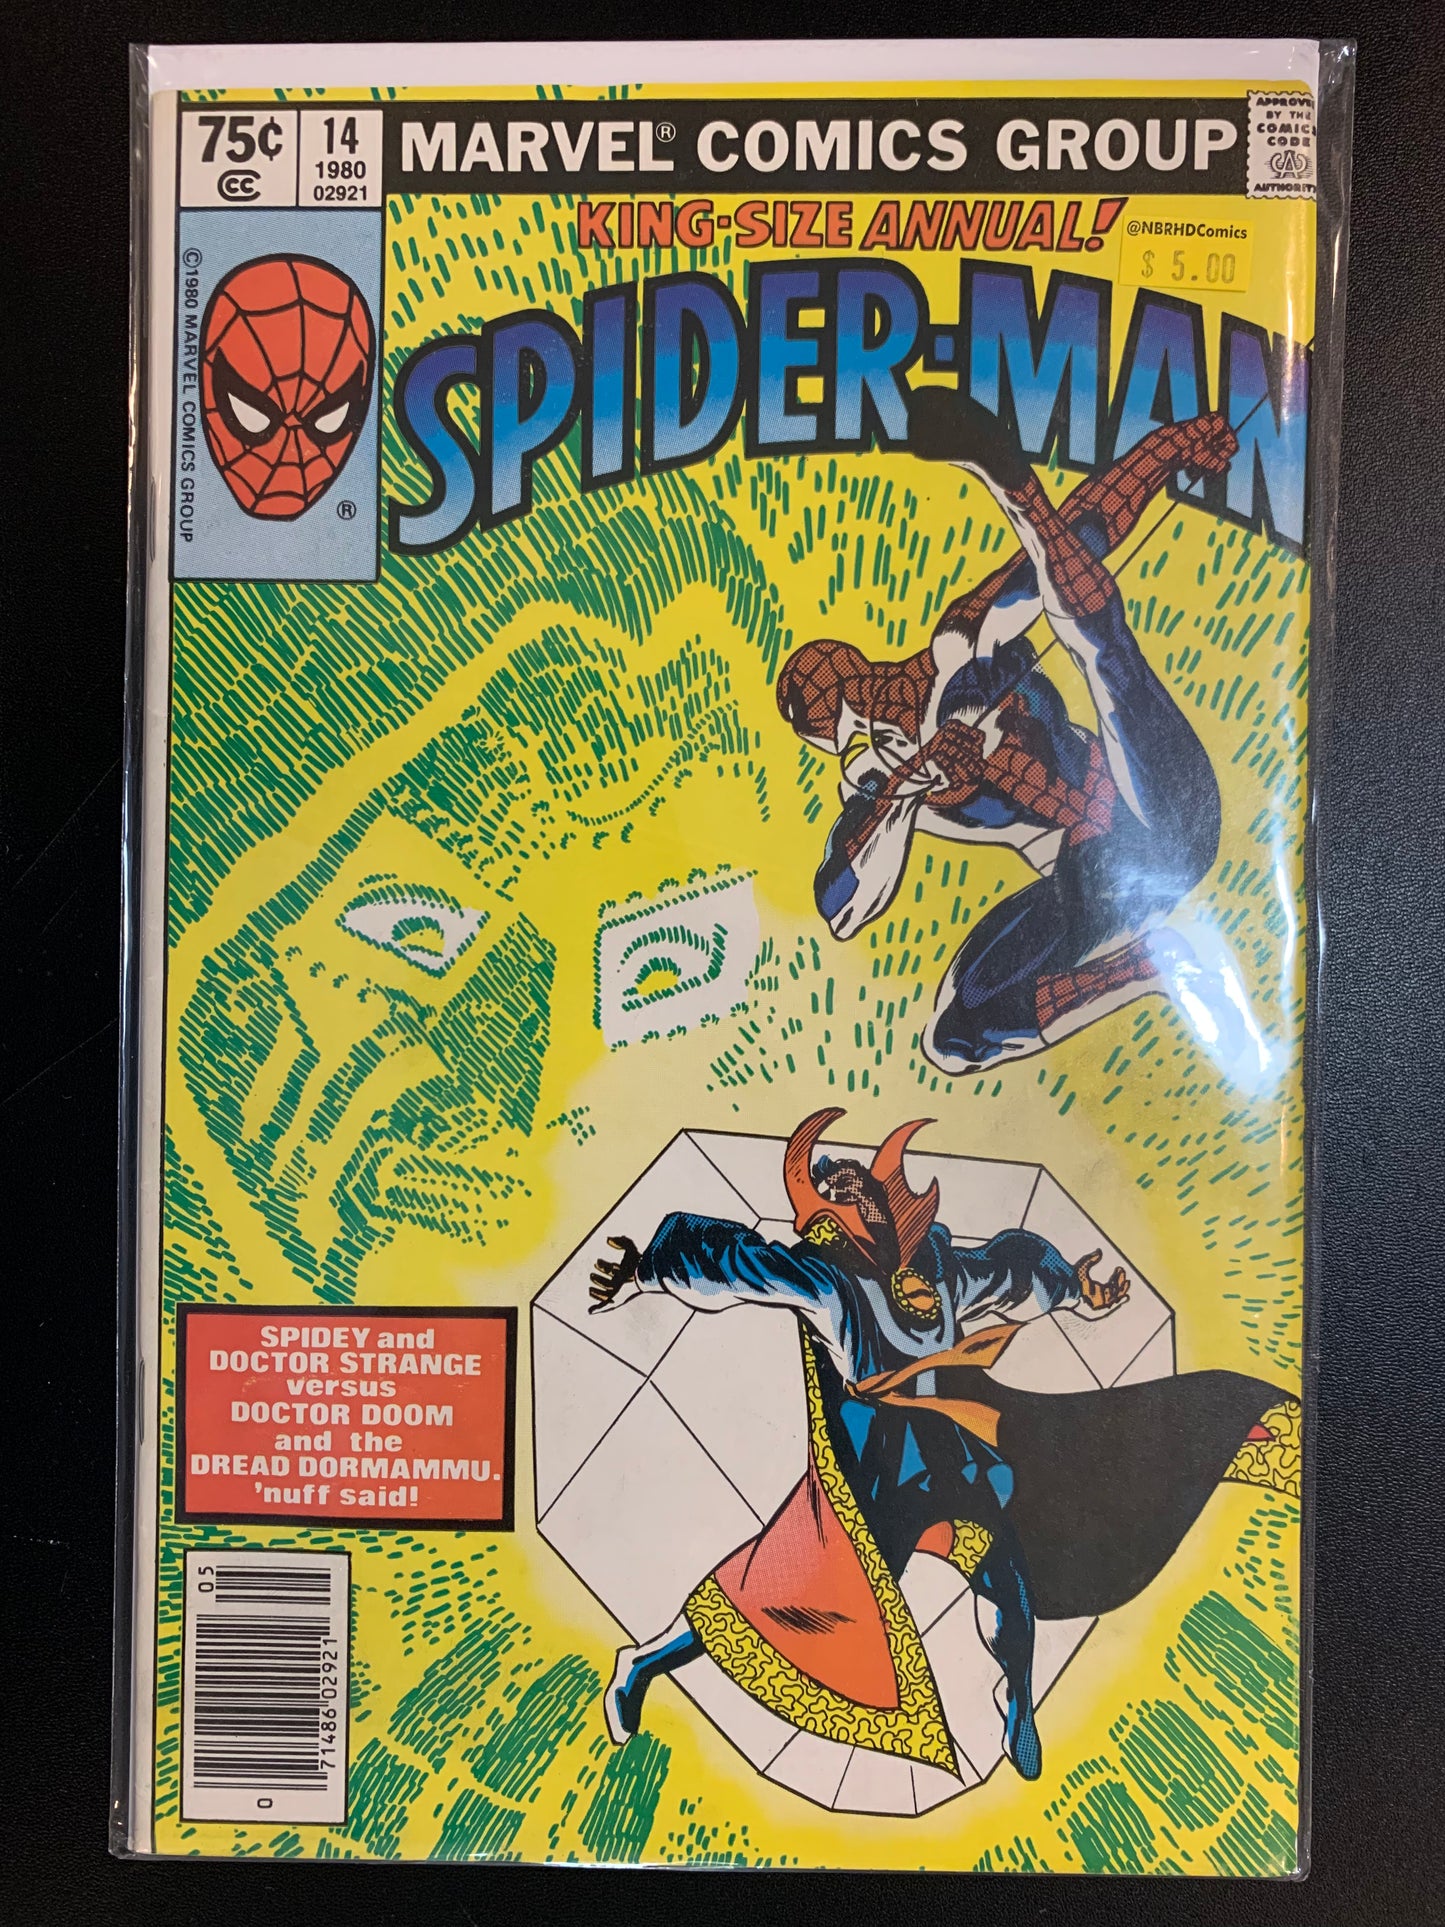 Amazing Spider-man Annual #14